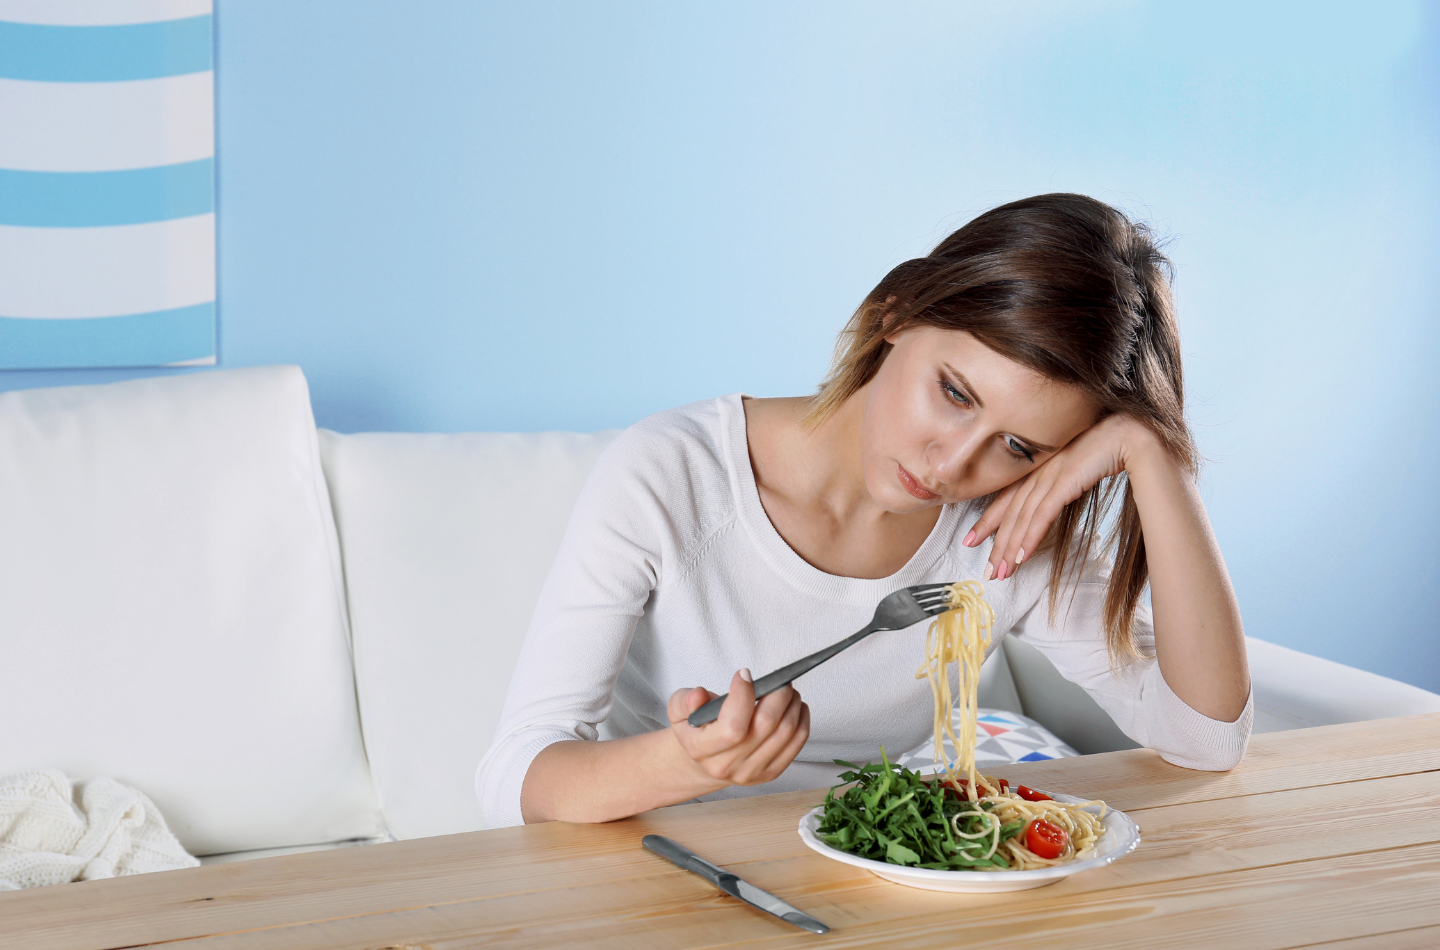 Why Teenage Girls Get Eating Disorders?